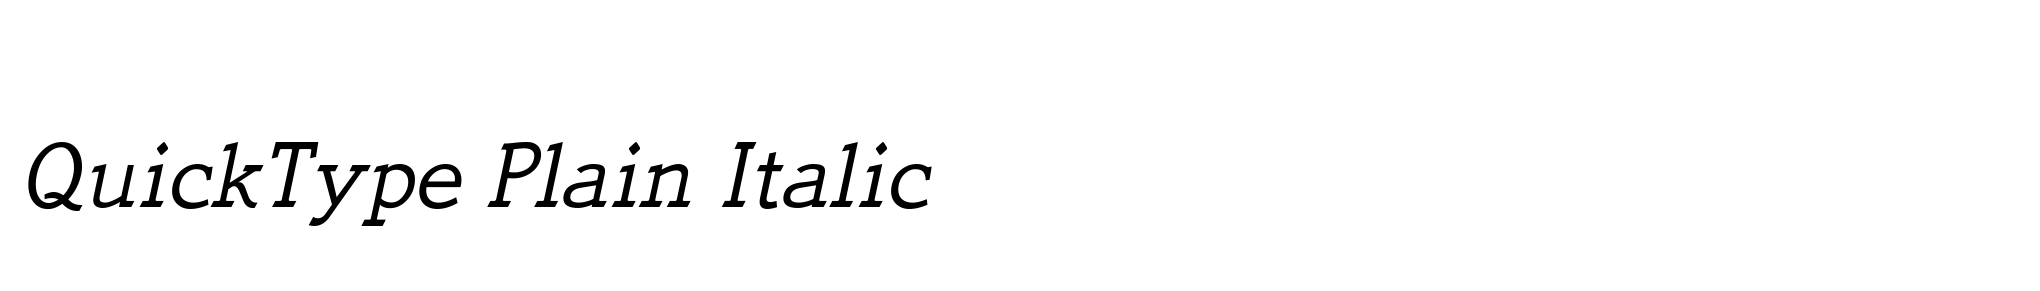 QuickType Plain Italic image